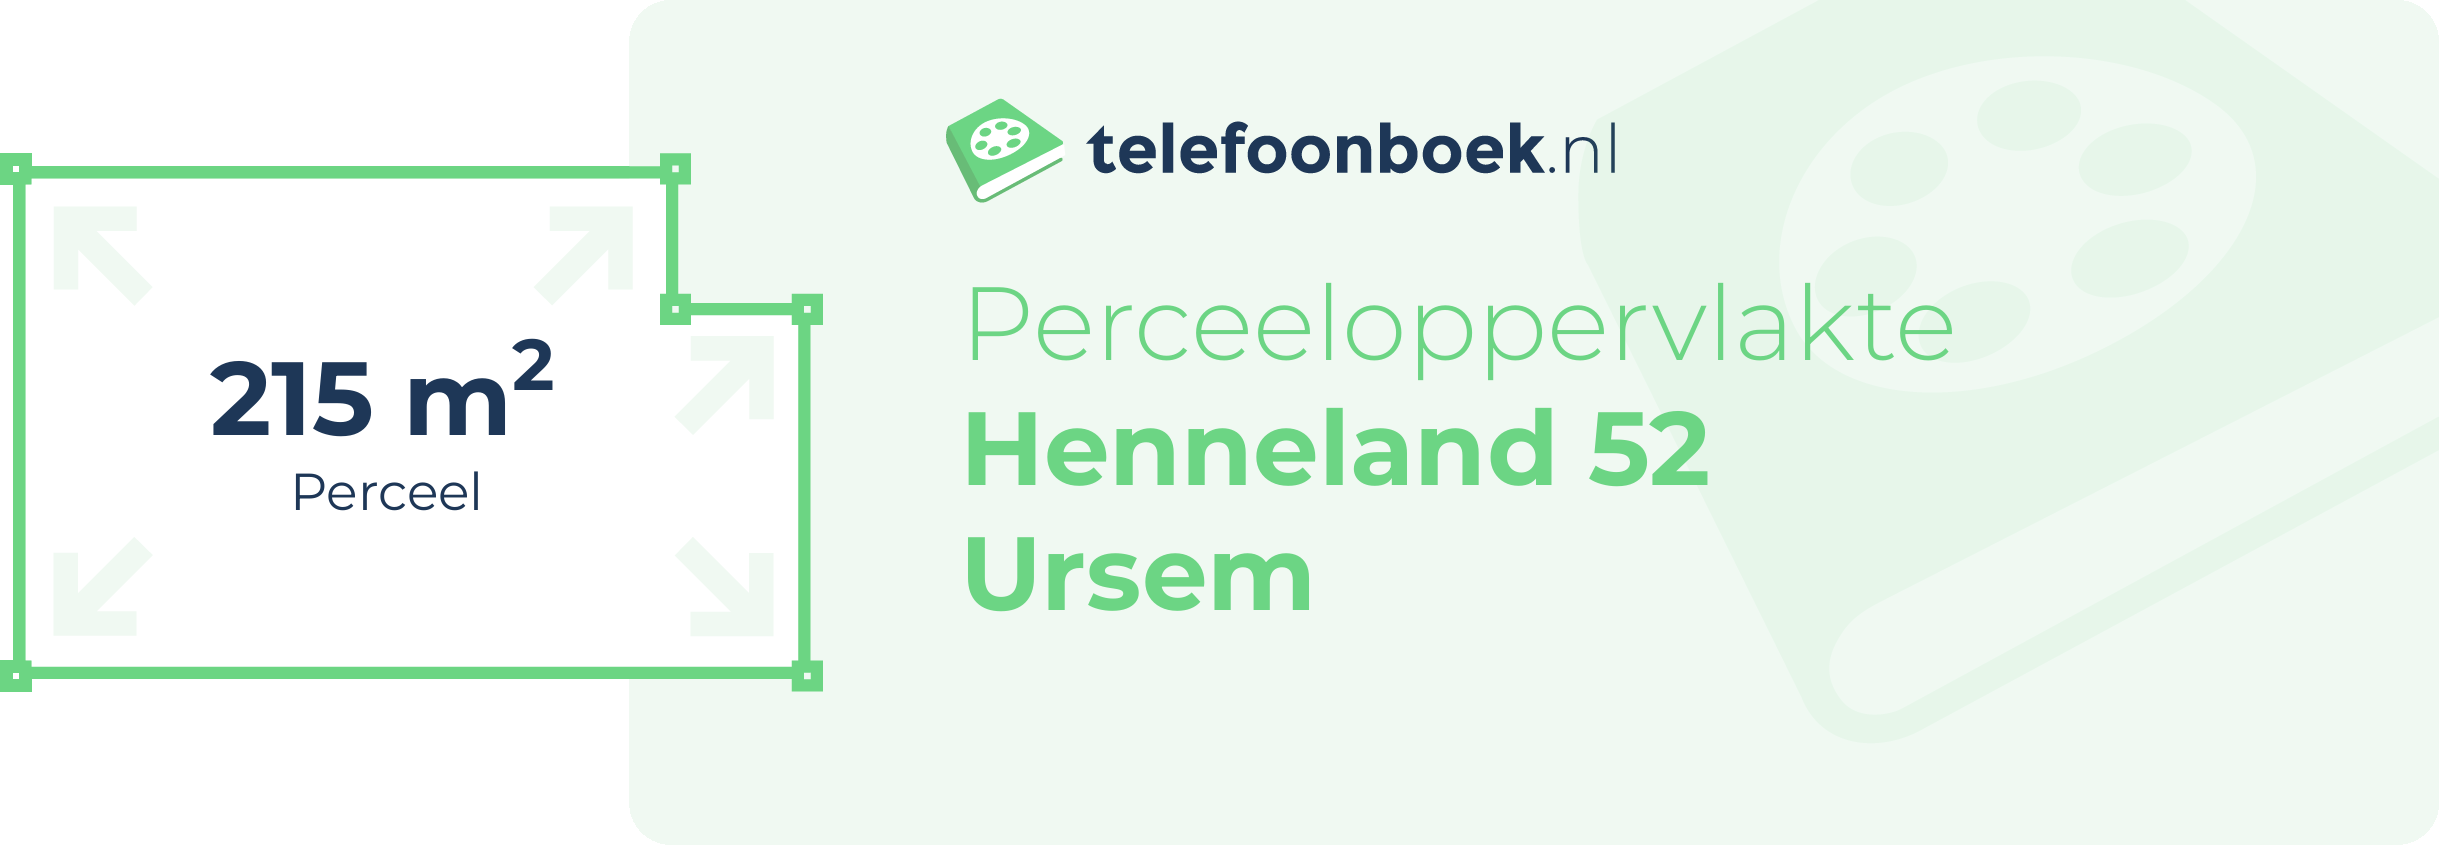 Perceeloppervlakte Henneland 52 Ursem